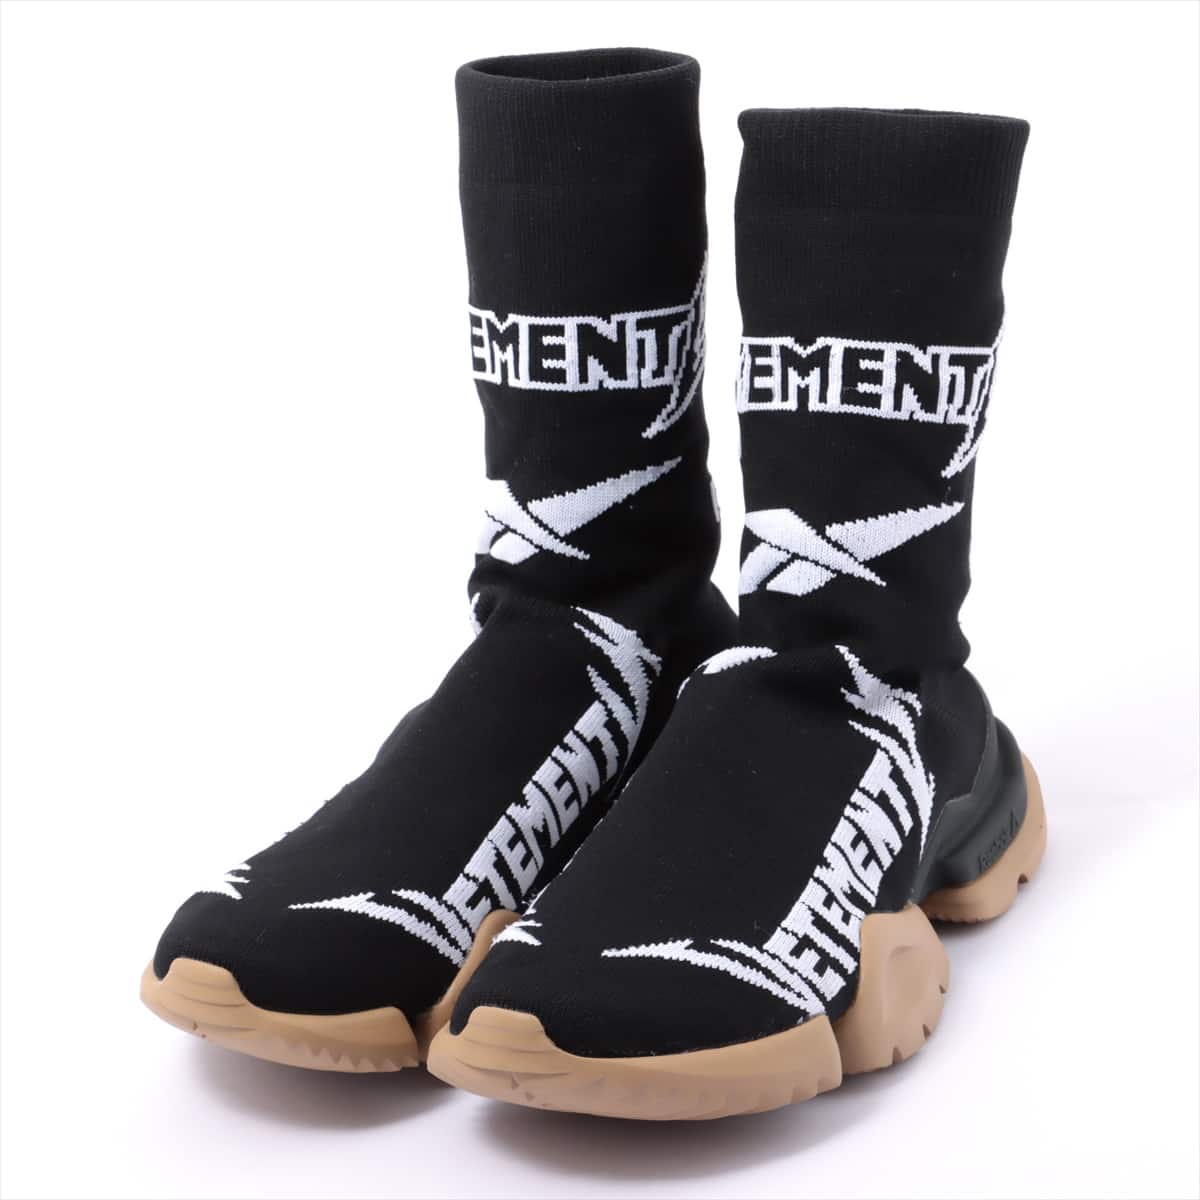 リーボック×ヴェトモン ポリエステル ブーツ EUR 37.5 レディース ブラック Metal sock boots